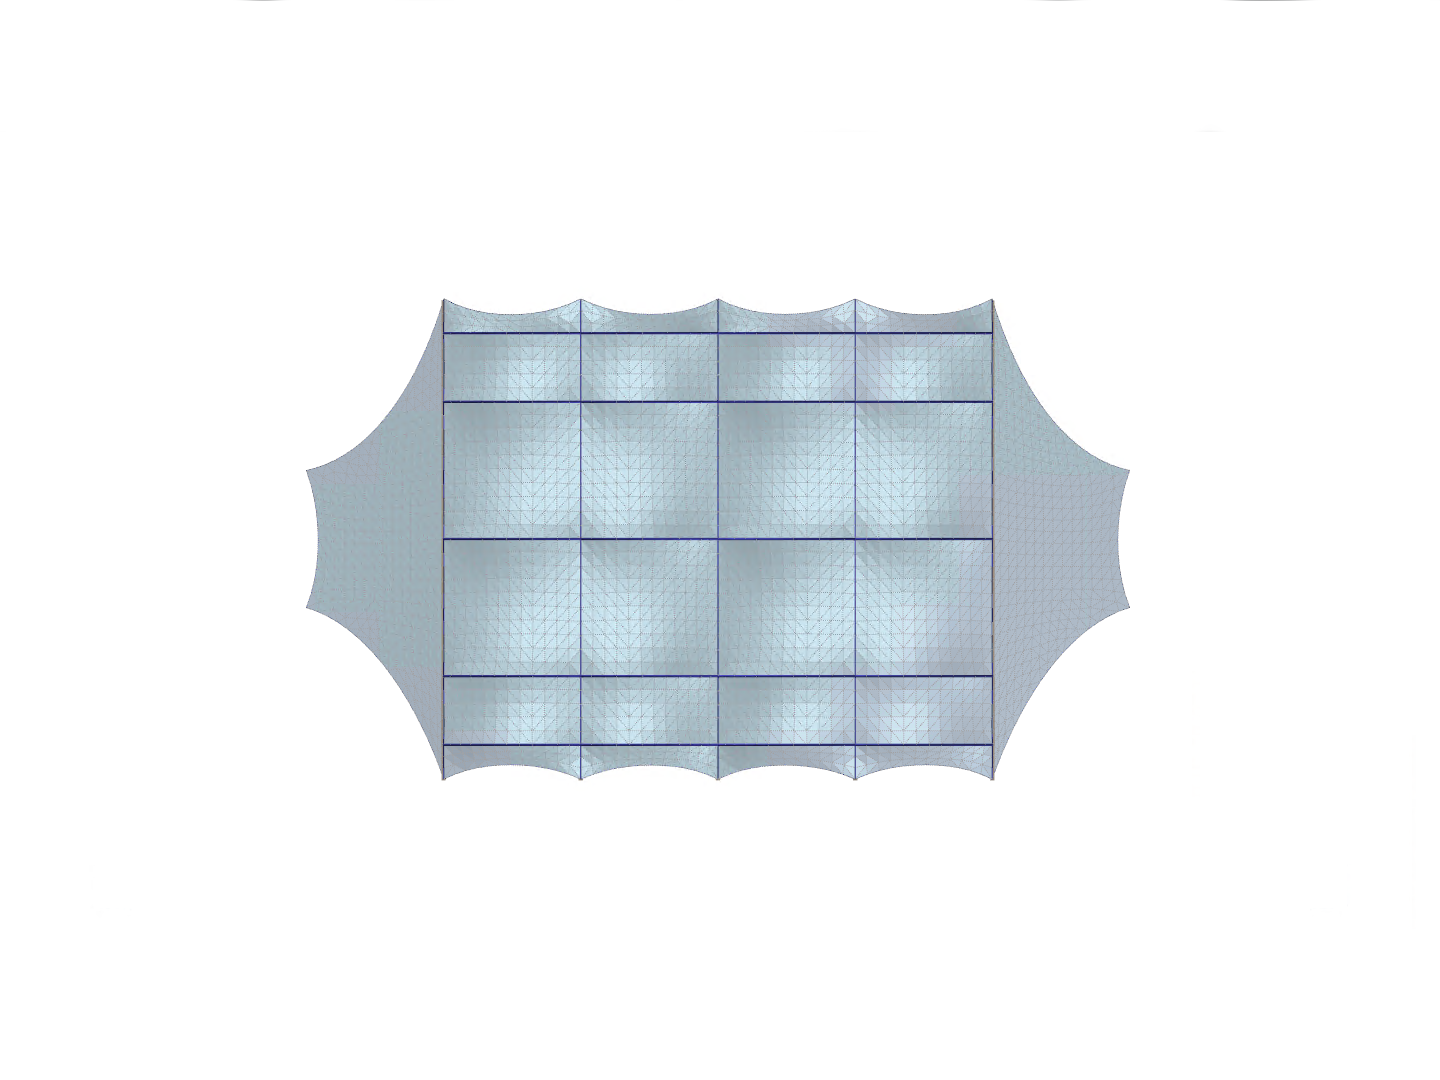 Hall with glass roof），Z轴方向视图